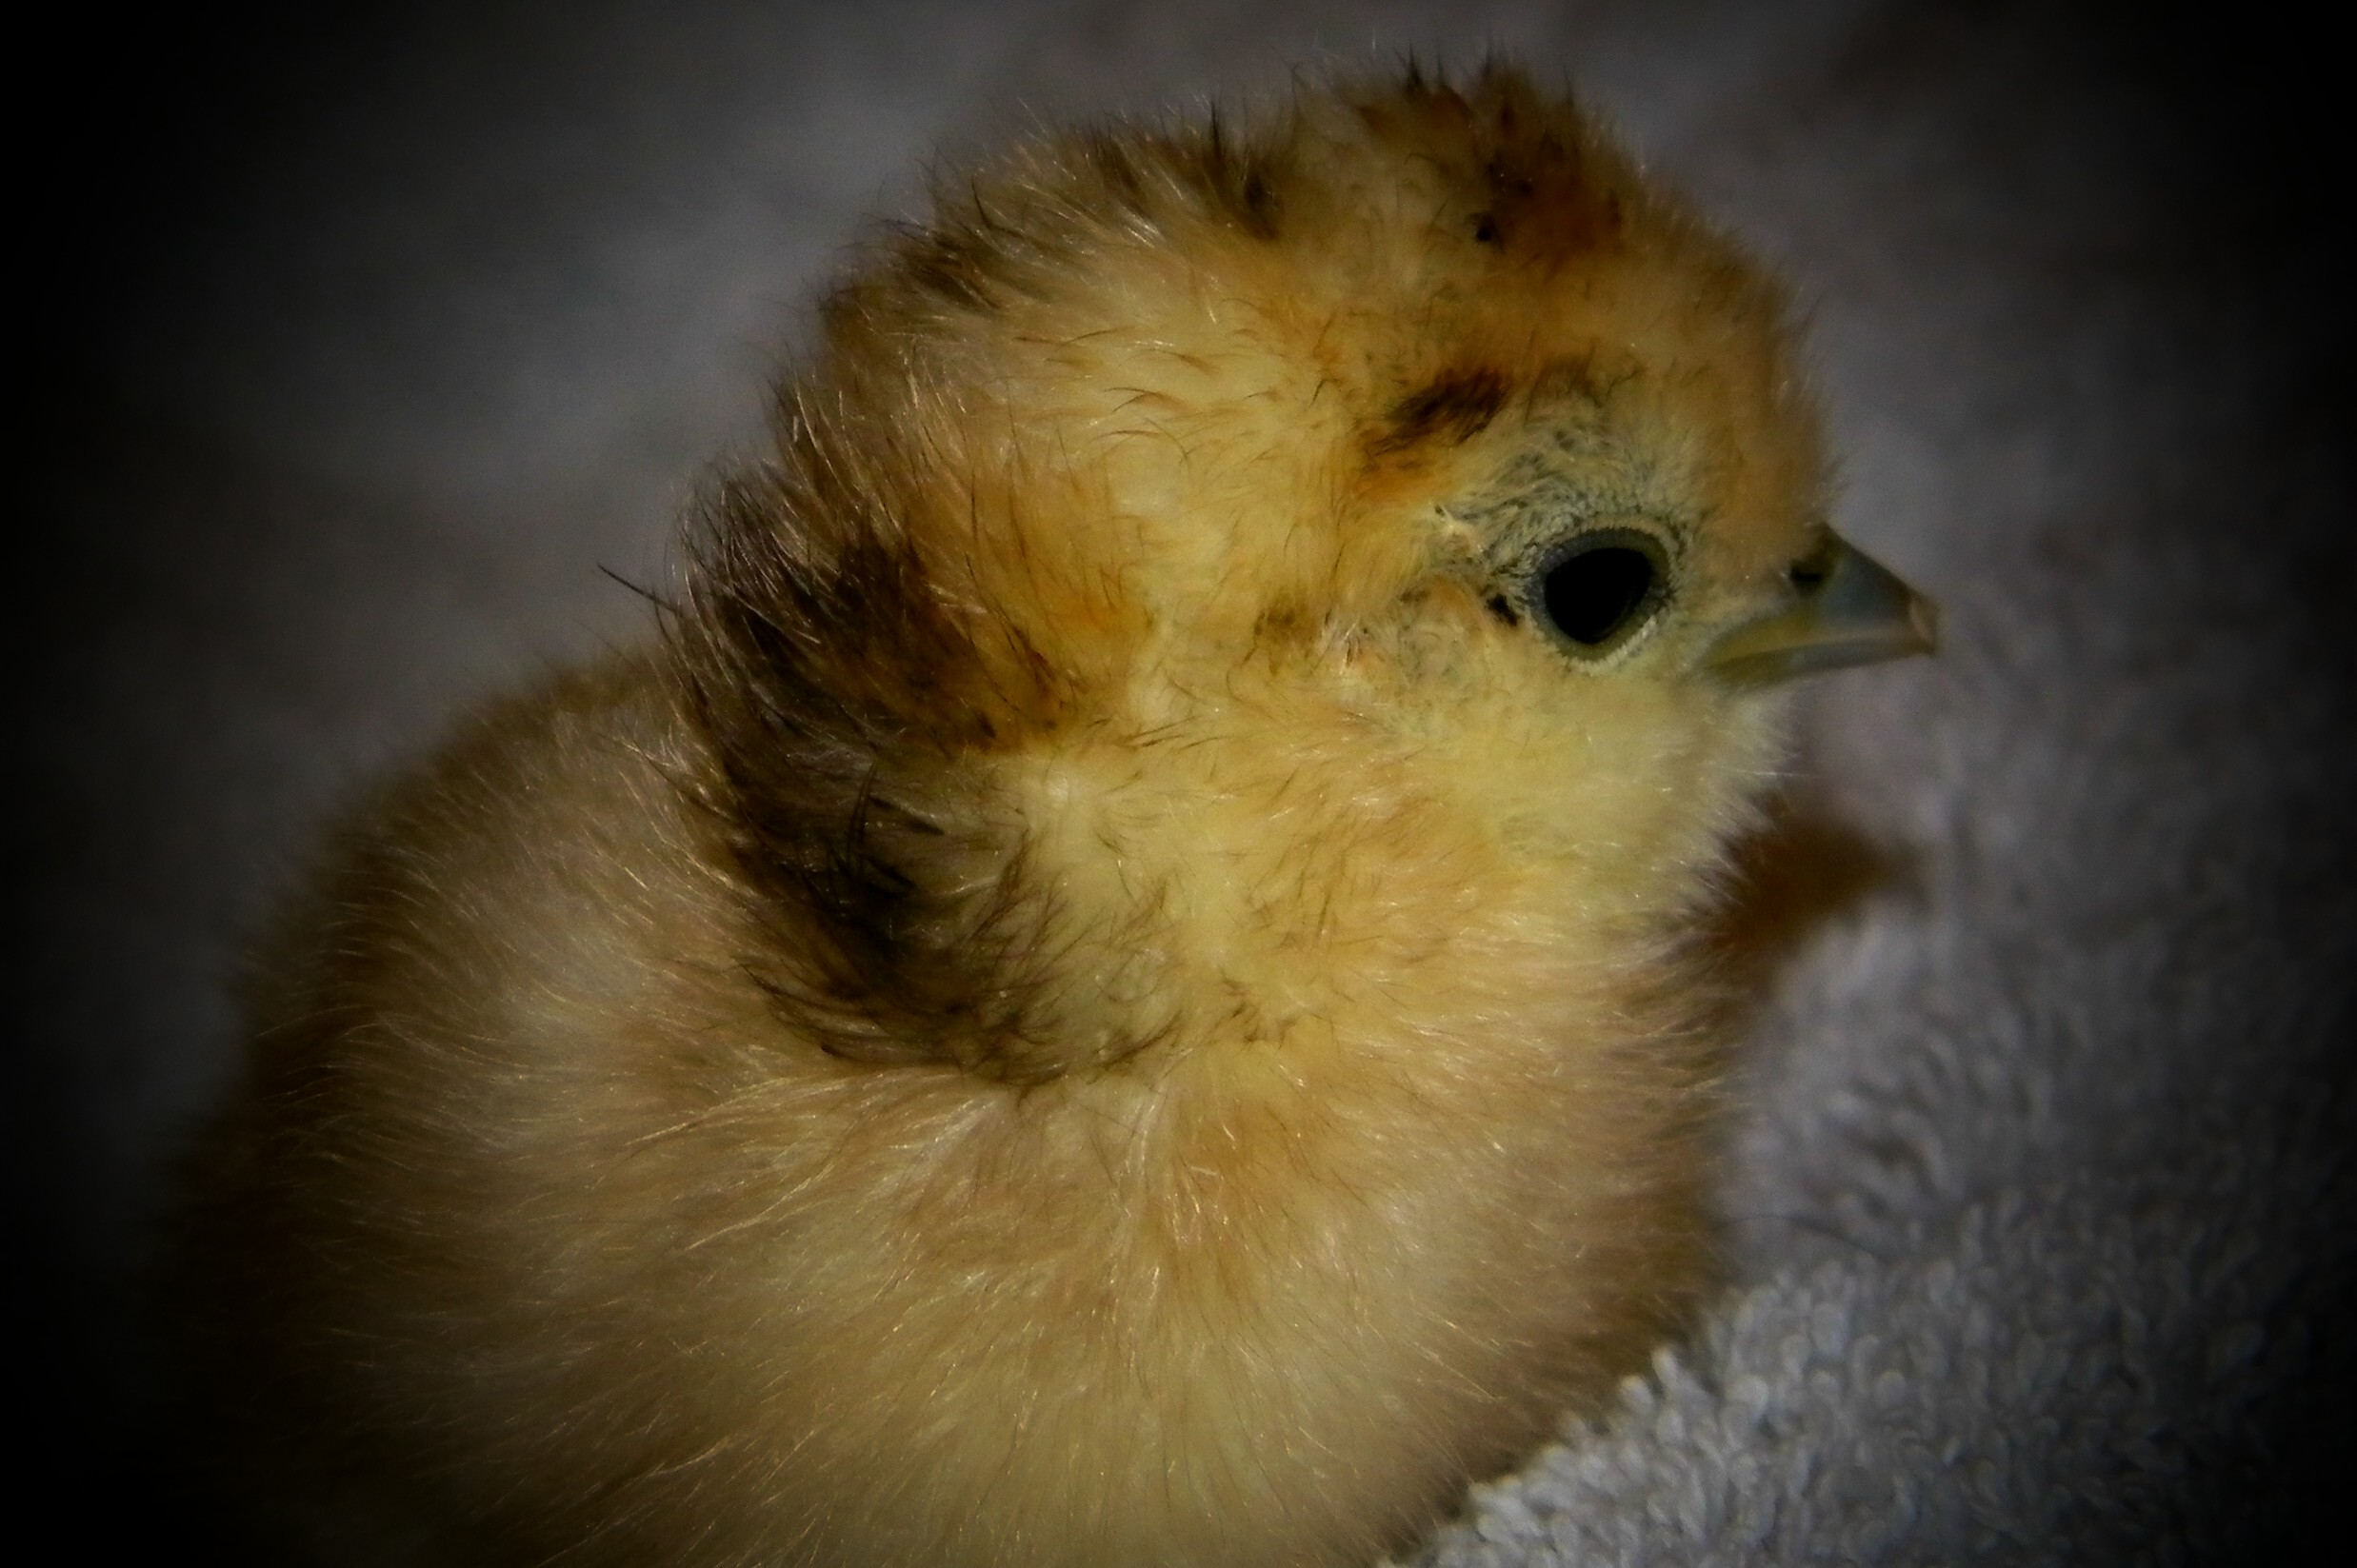 Still a little wet from hatching but aren't I cute!